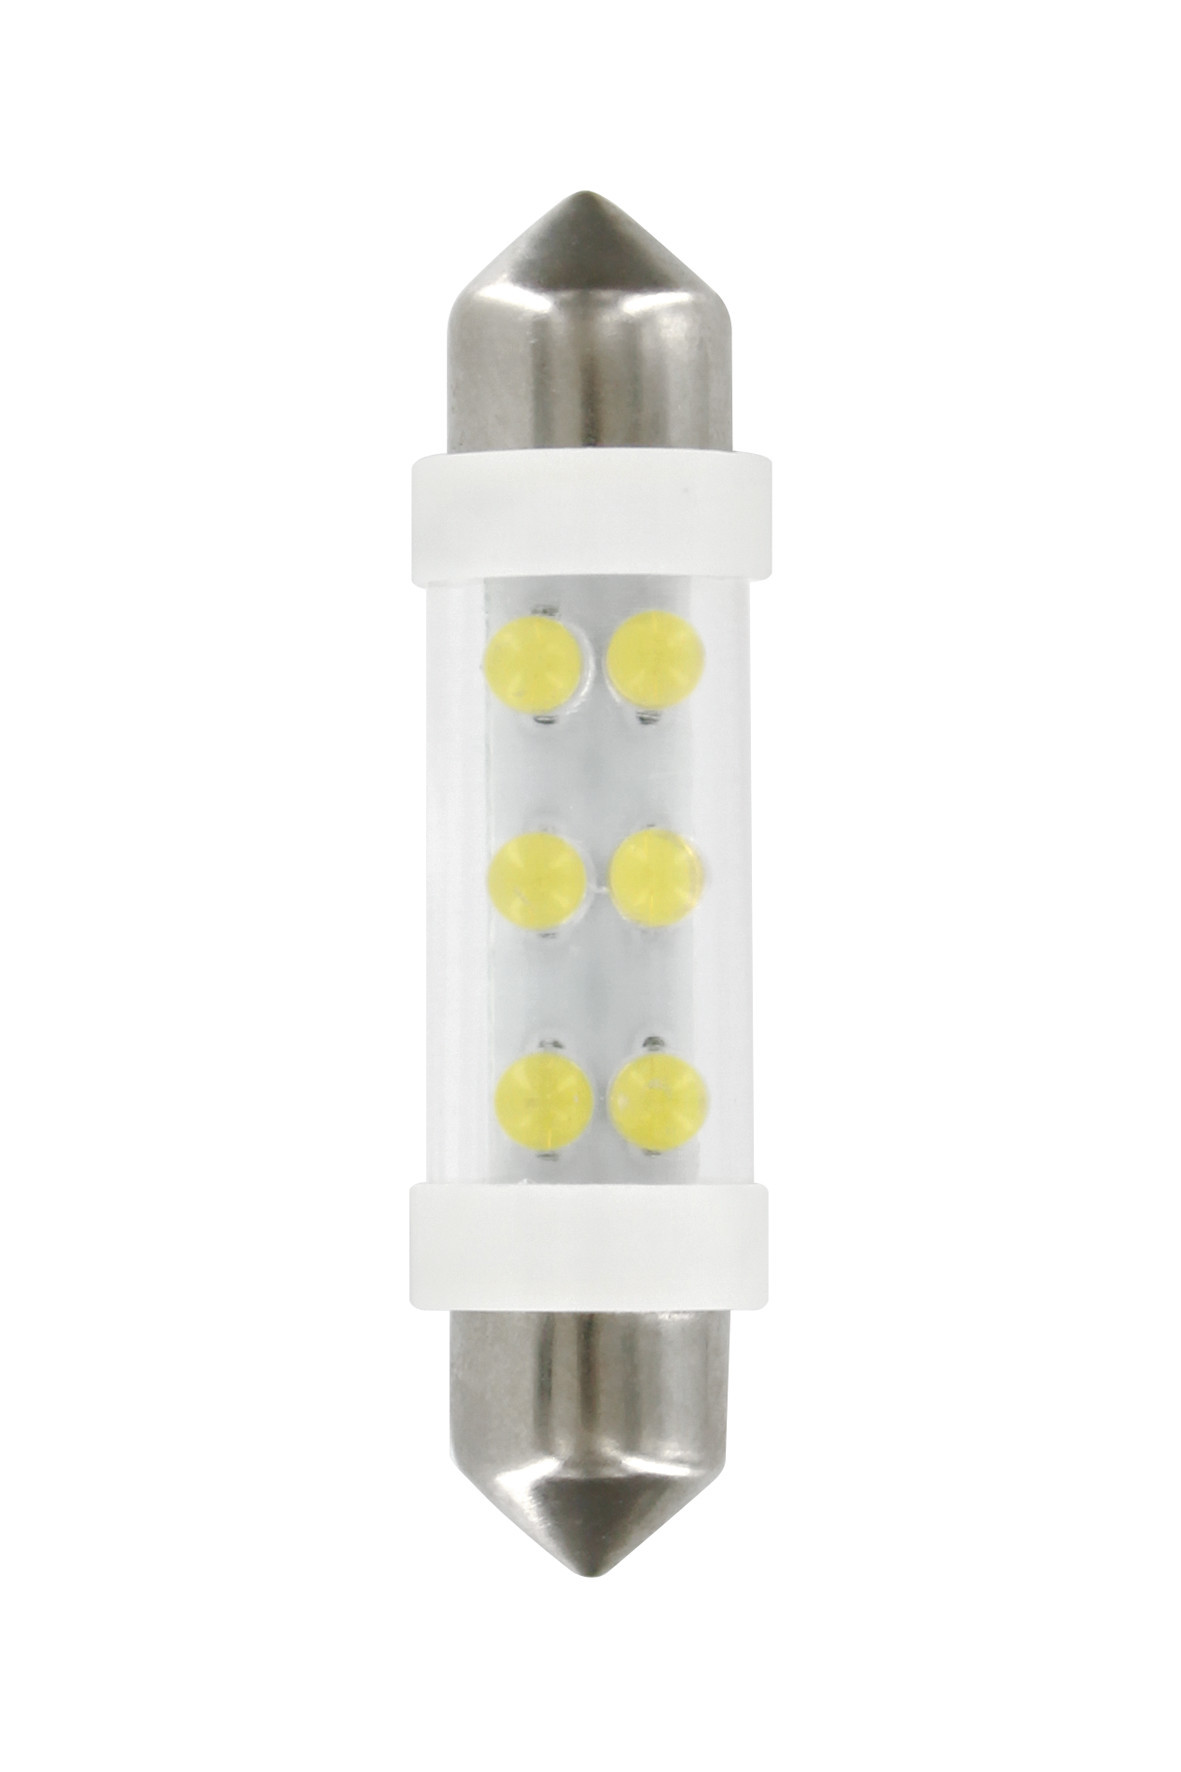 24V Festoon lamp 6 Led - 11x41 mm - SV8,5-8 - 2 pcs - White thumb